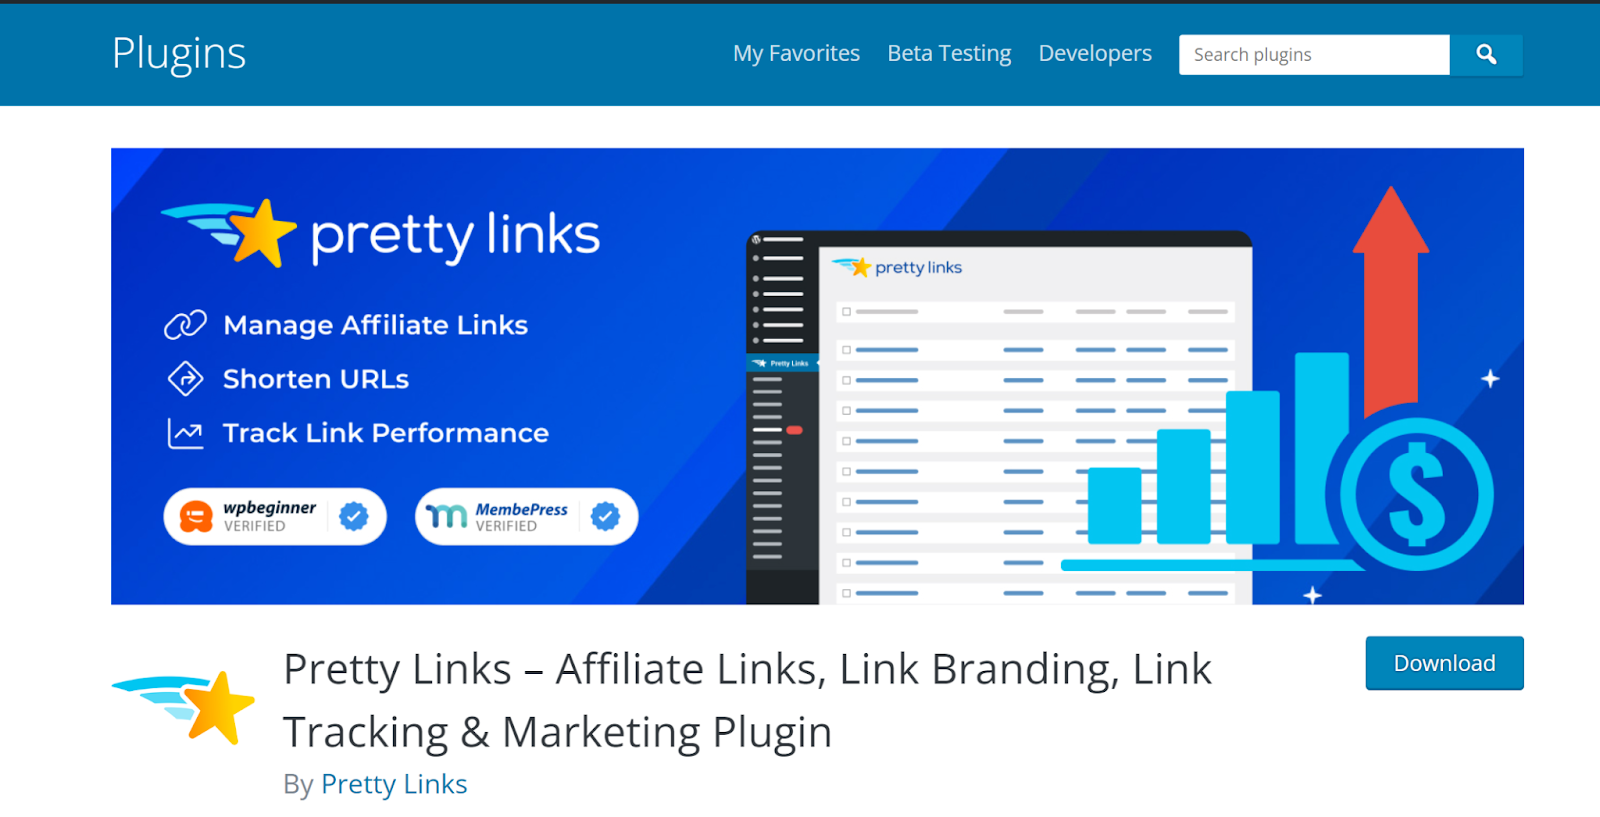 A screenshot featuring a Pretty Links Plugin 